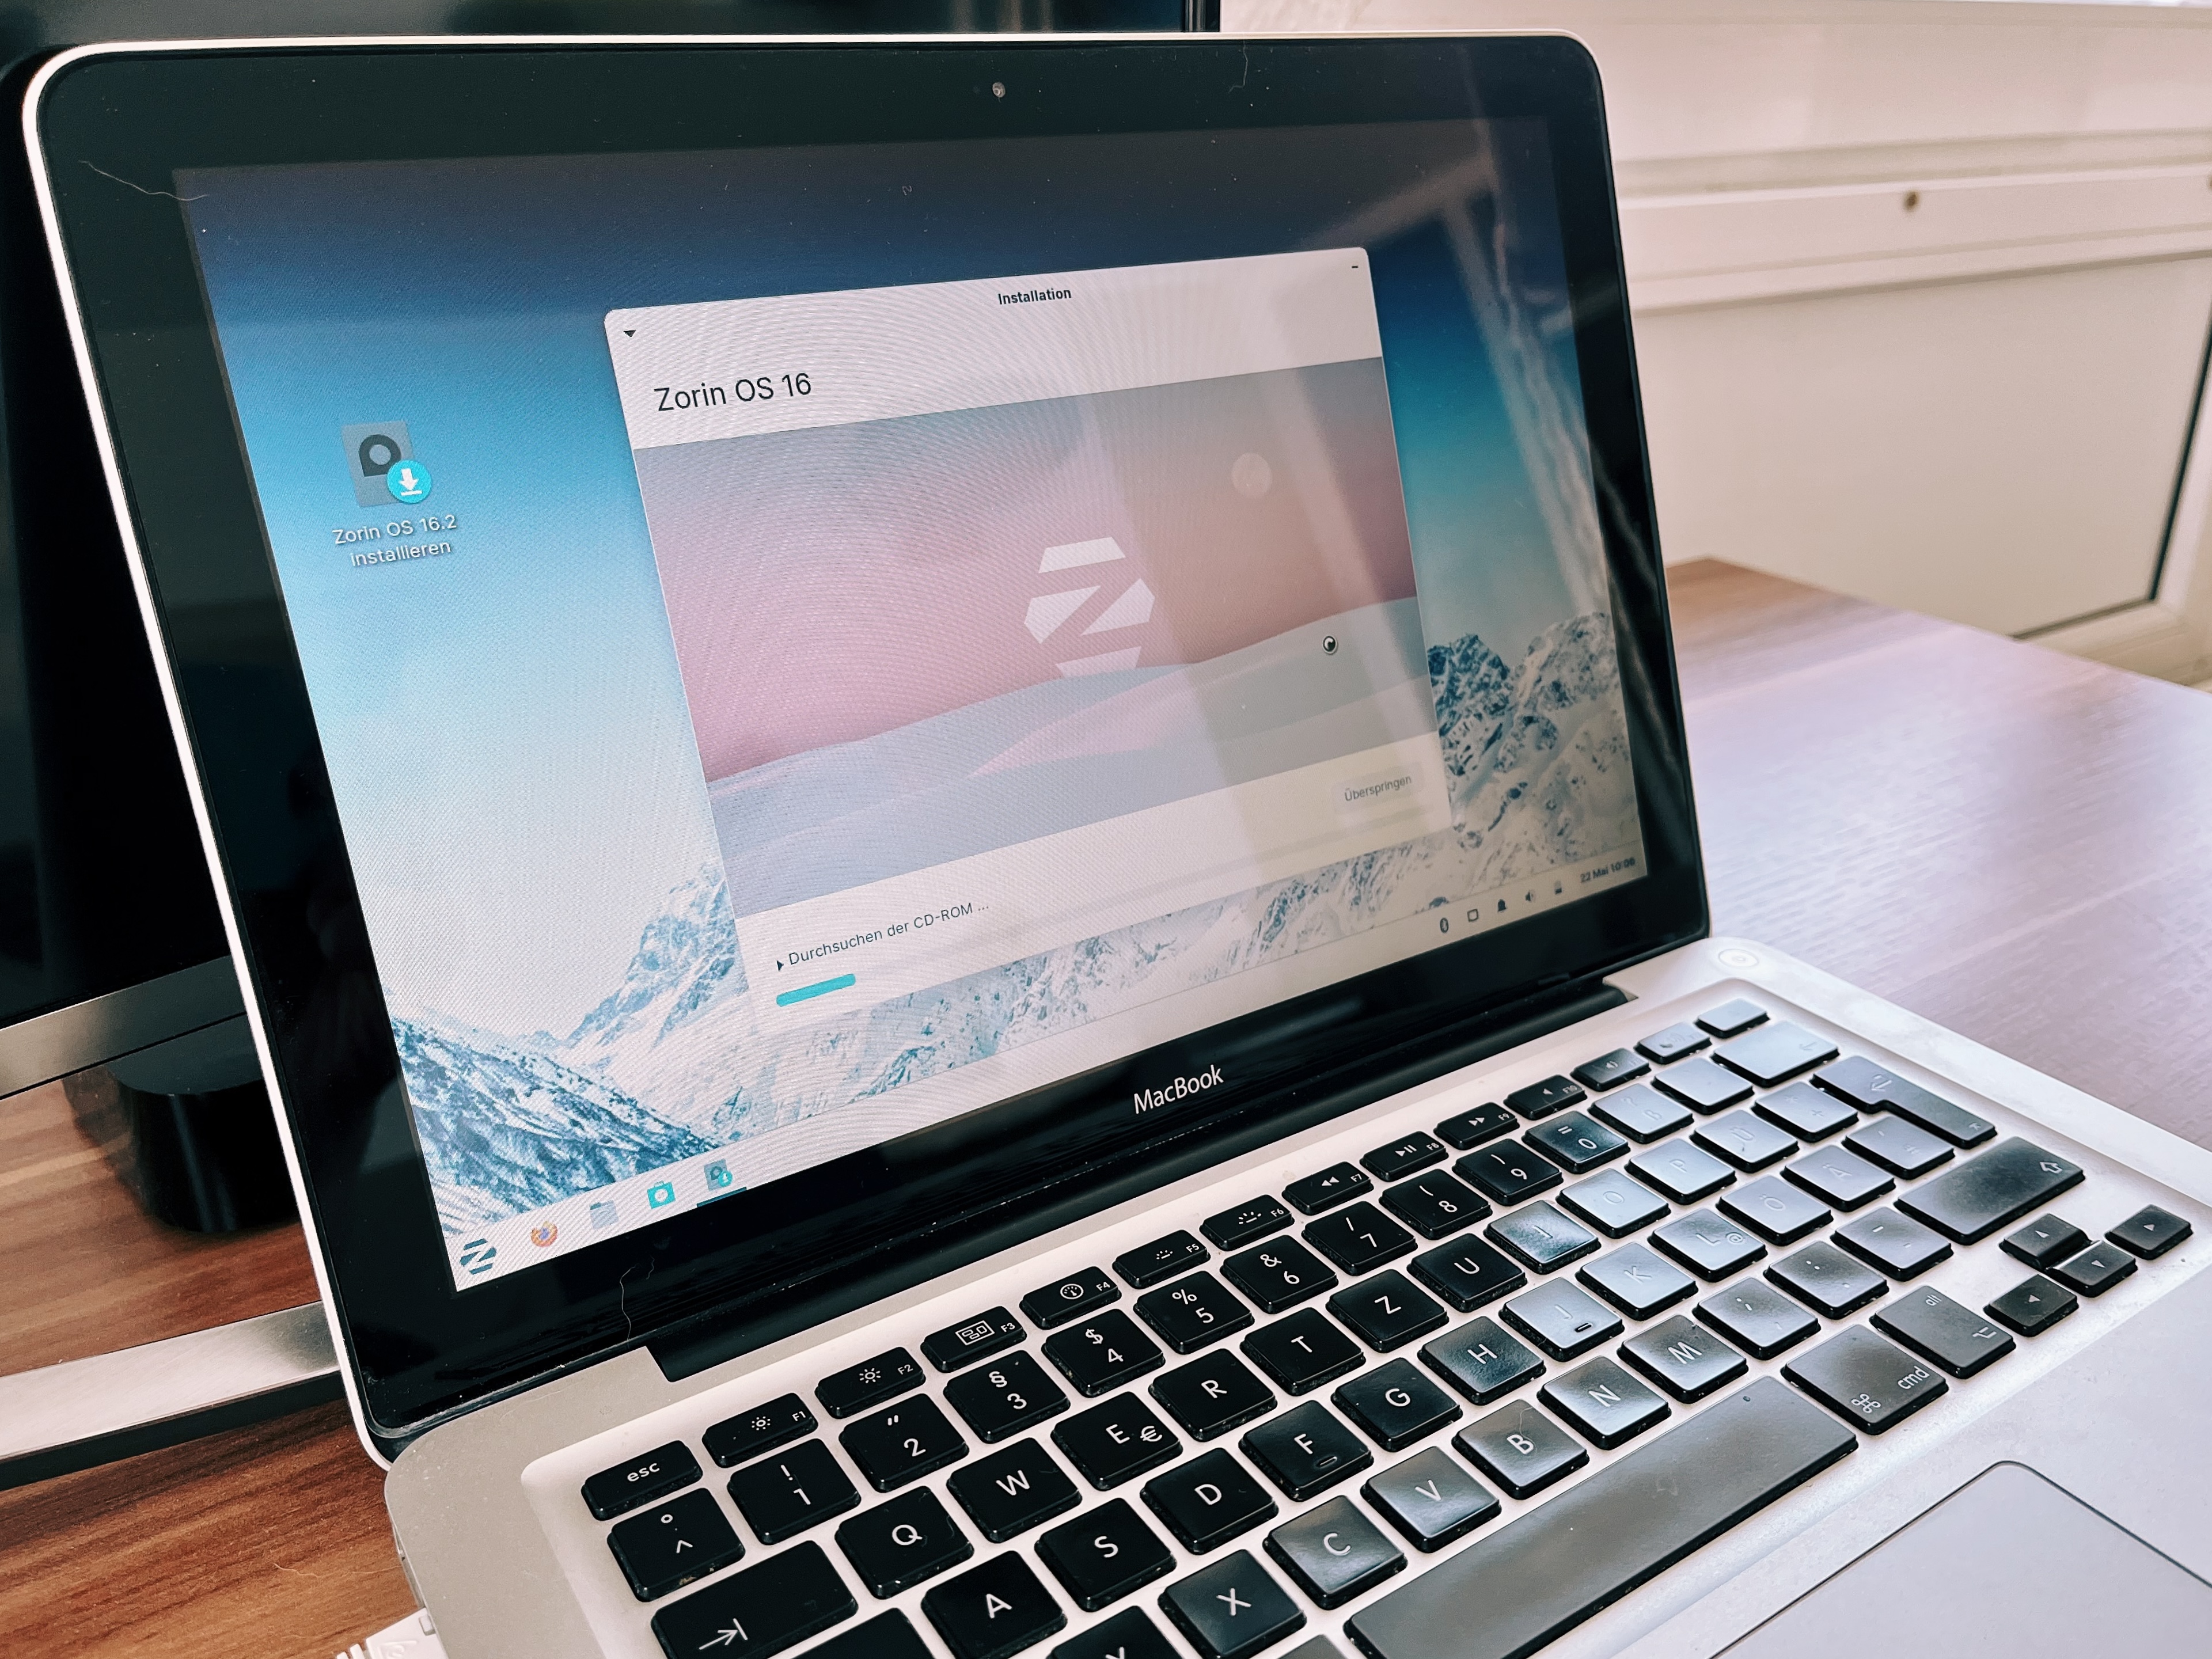 Zorin OS auf Unibody-MacBook von 2008 installieren